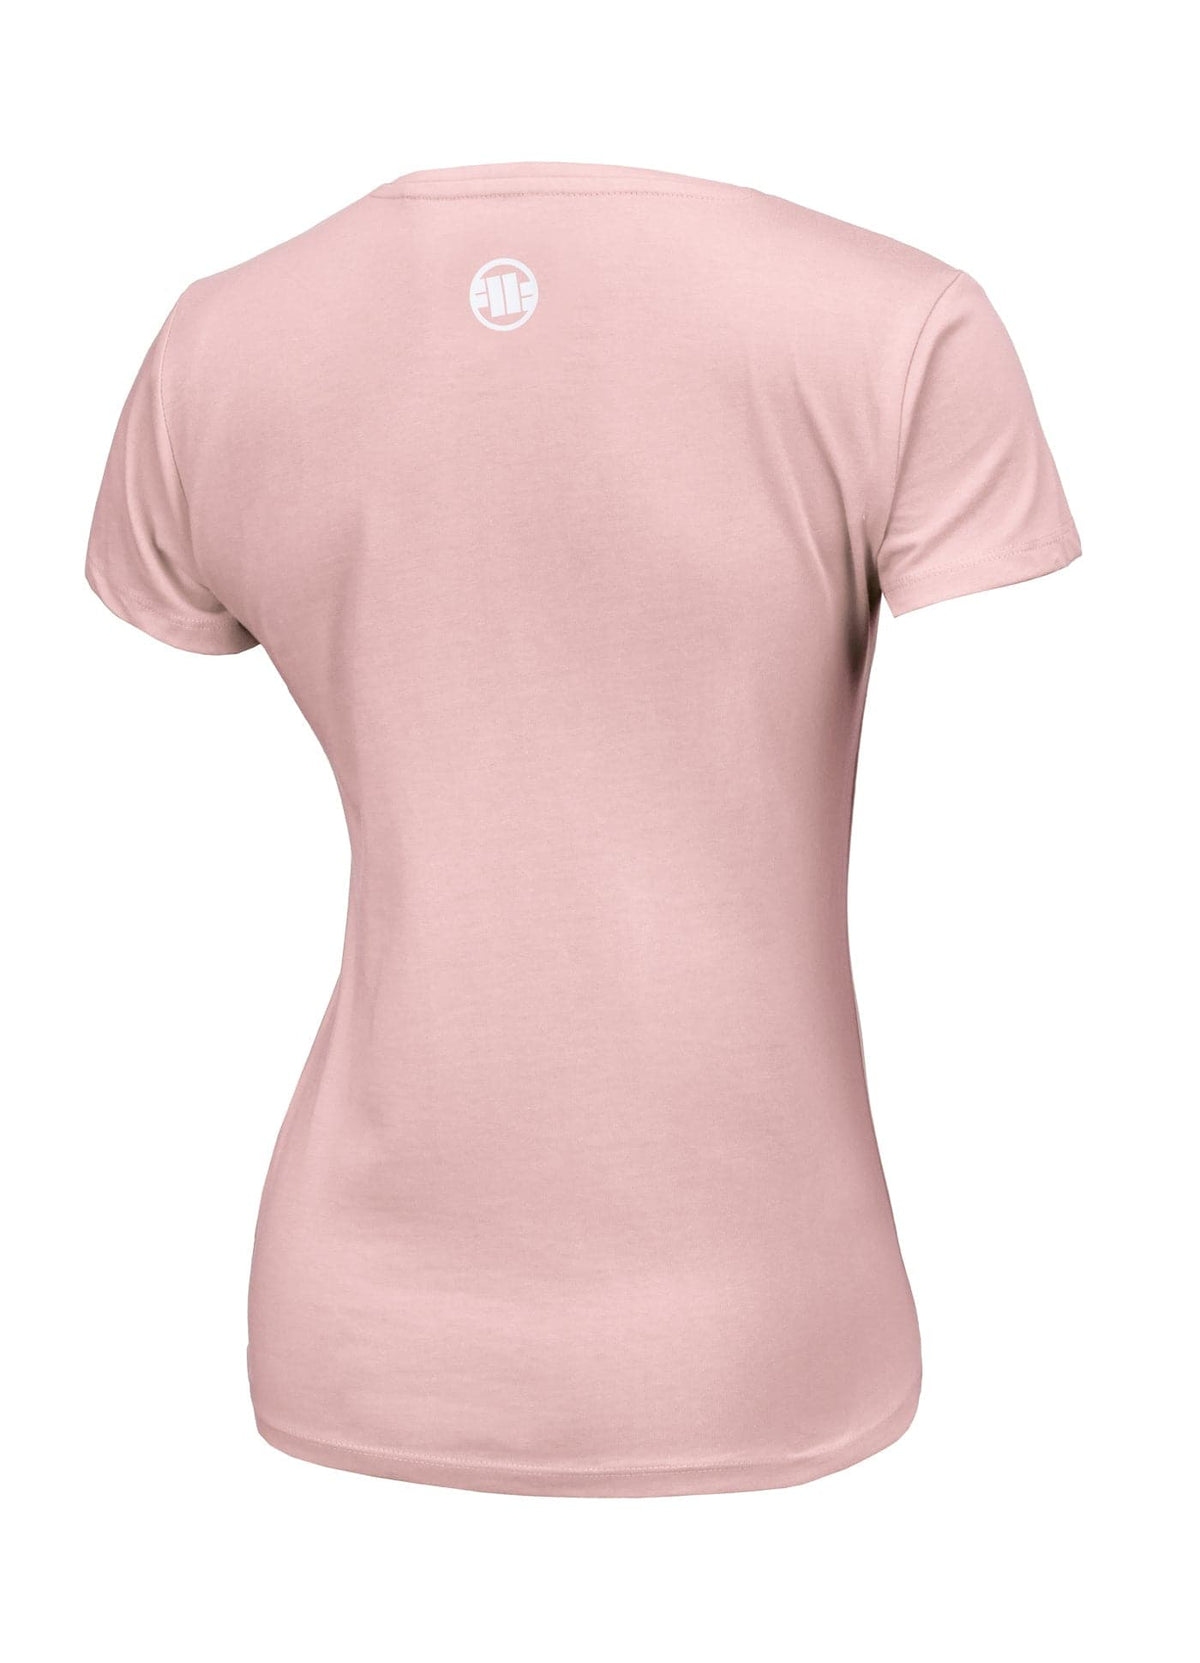 Damska koszulka PITBULL R Różowa - kup z Pitbull West Coast Oficjalny Sklep 